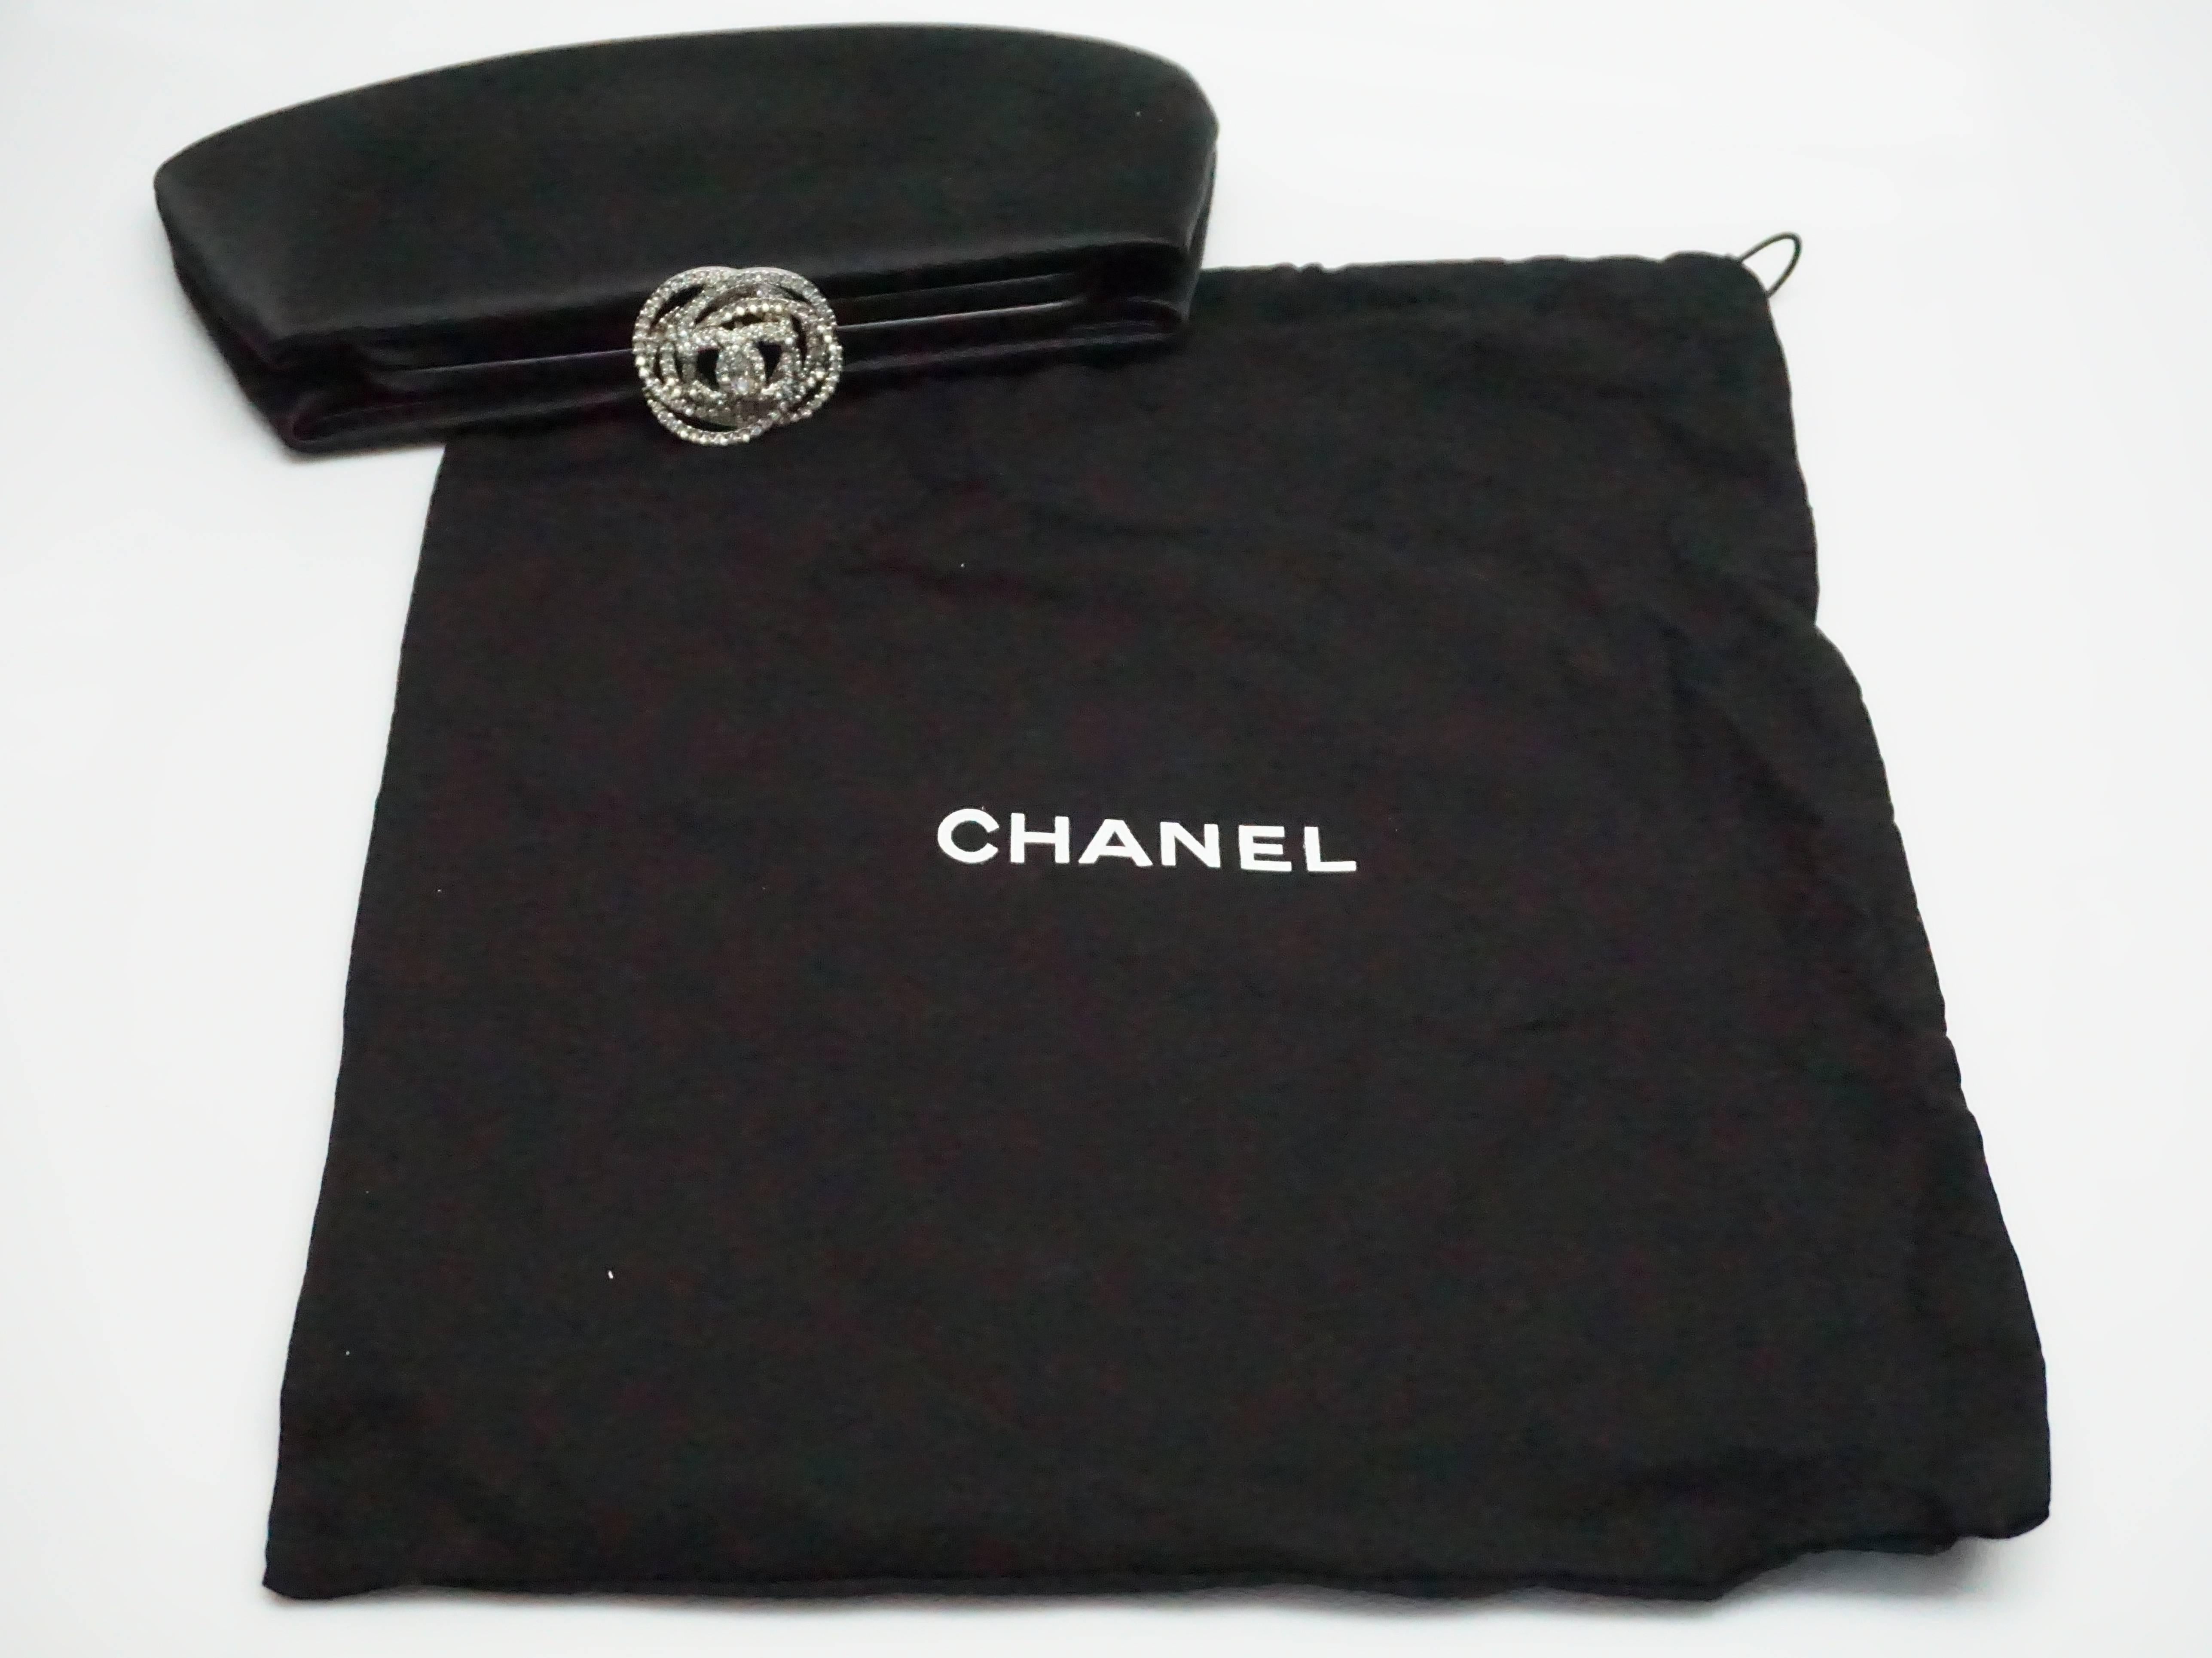 Chanel Black Satin Clutch with Rhinestone Camelia Clasp, 2011 5